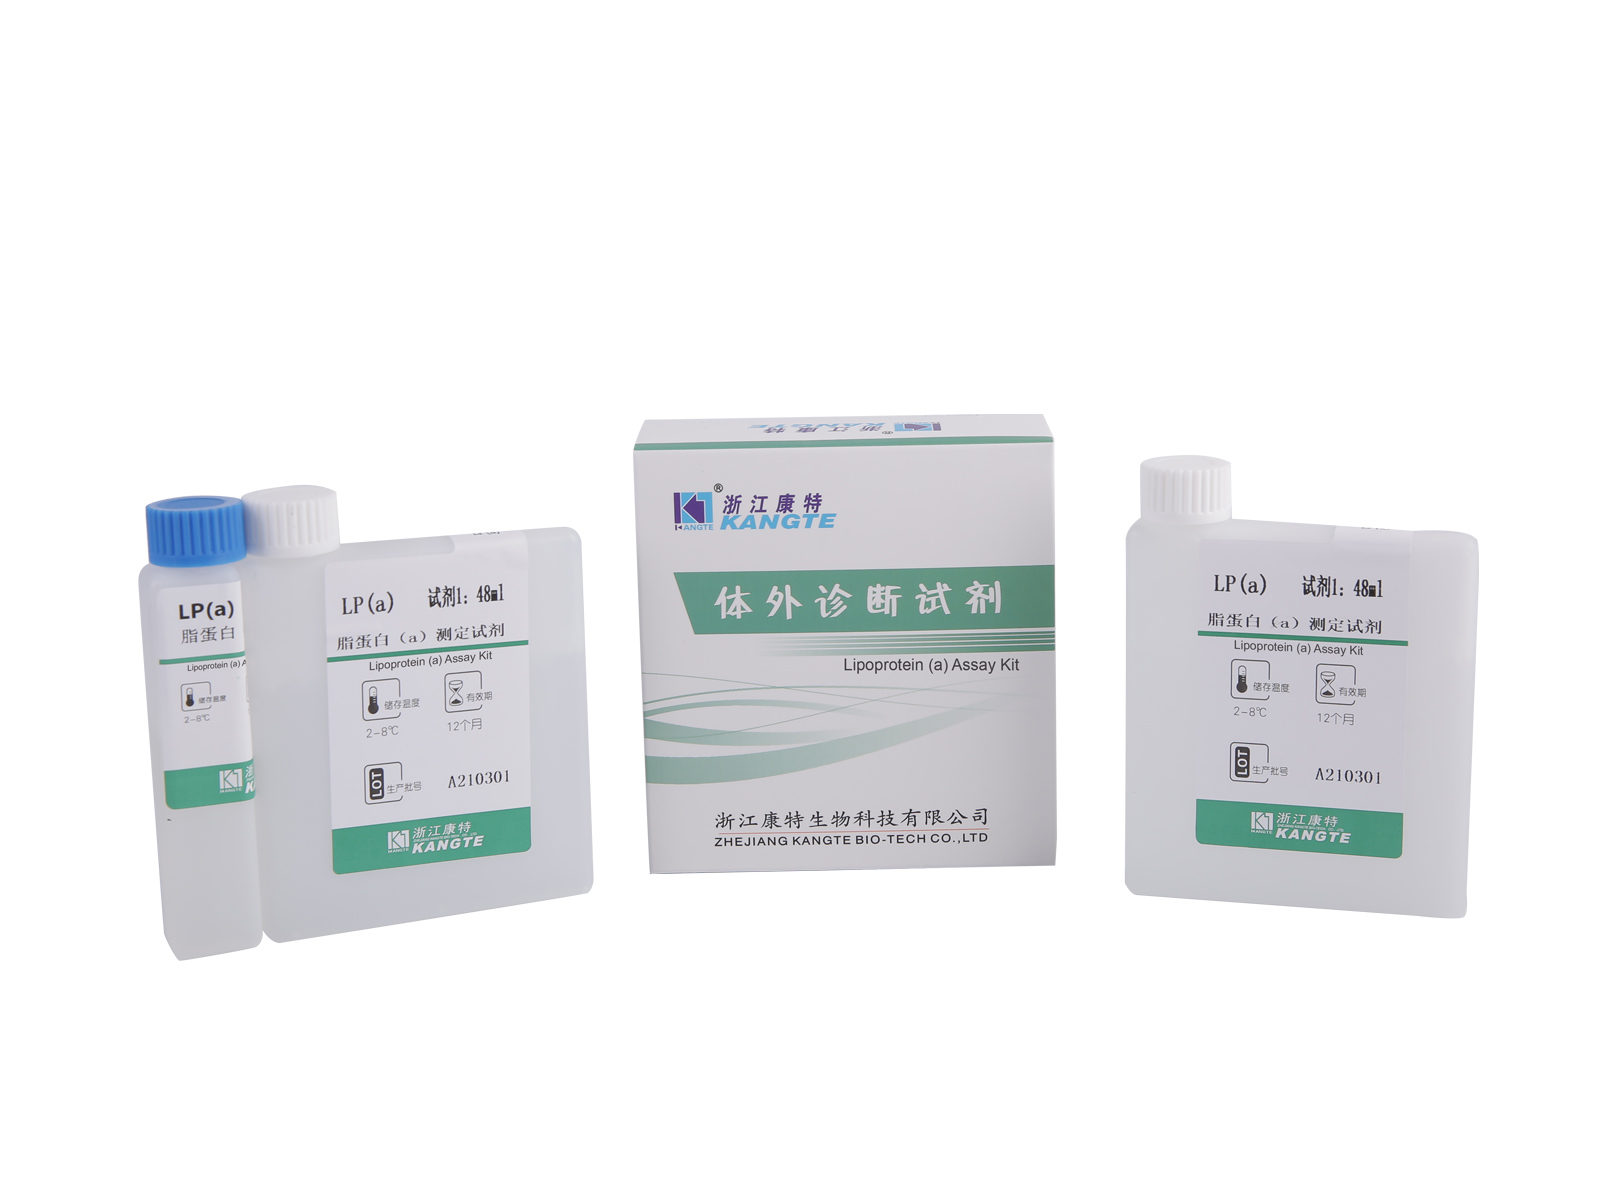 【LP(a)】Kit de ensaio de lipoproteína (a) (método imunoturbidimétrico aprimorado com látex)